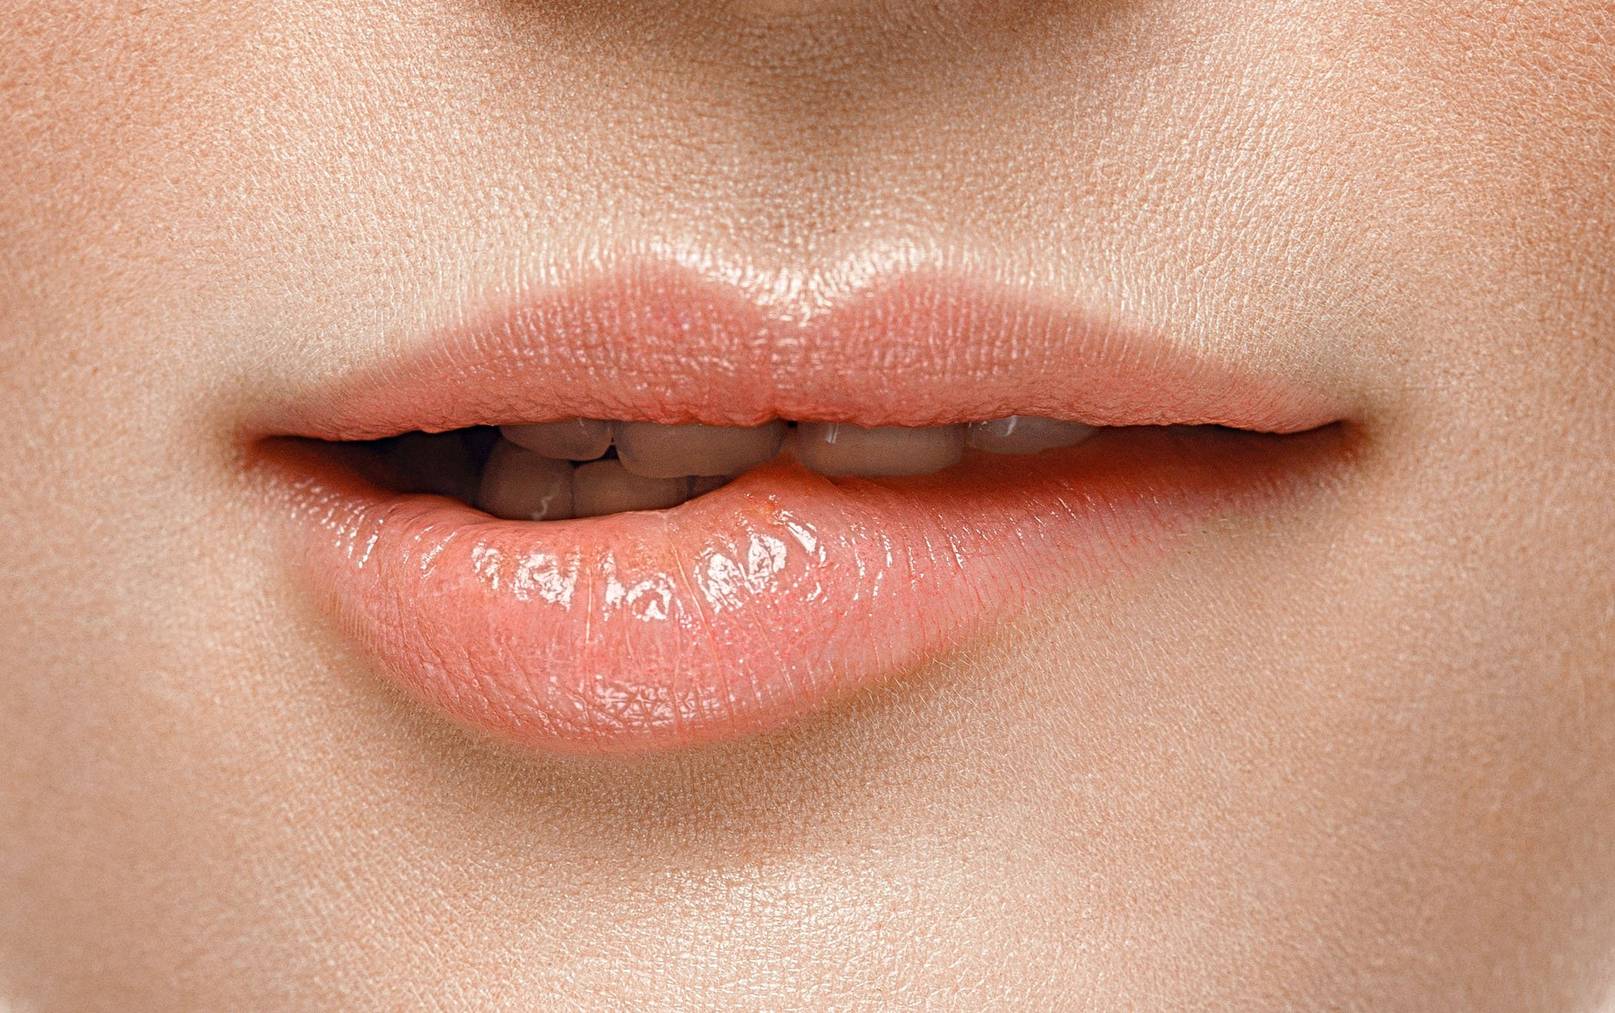 Lippen brauchen besonders viel Schutz im Winter, weil sie sonst sehr schnell rissig werden. (Bild: iStock)